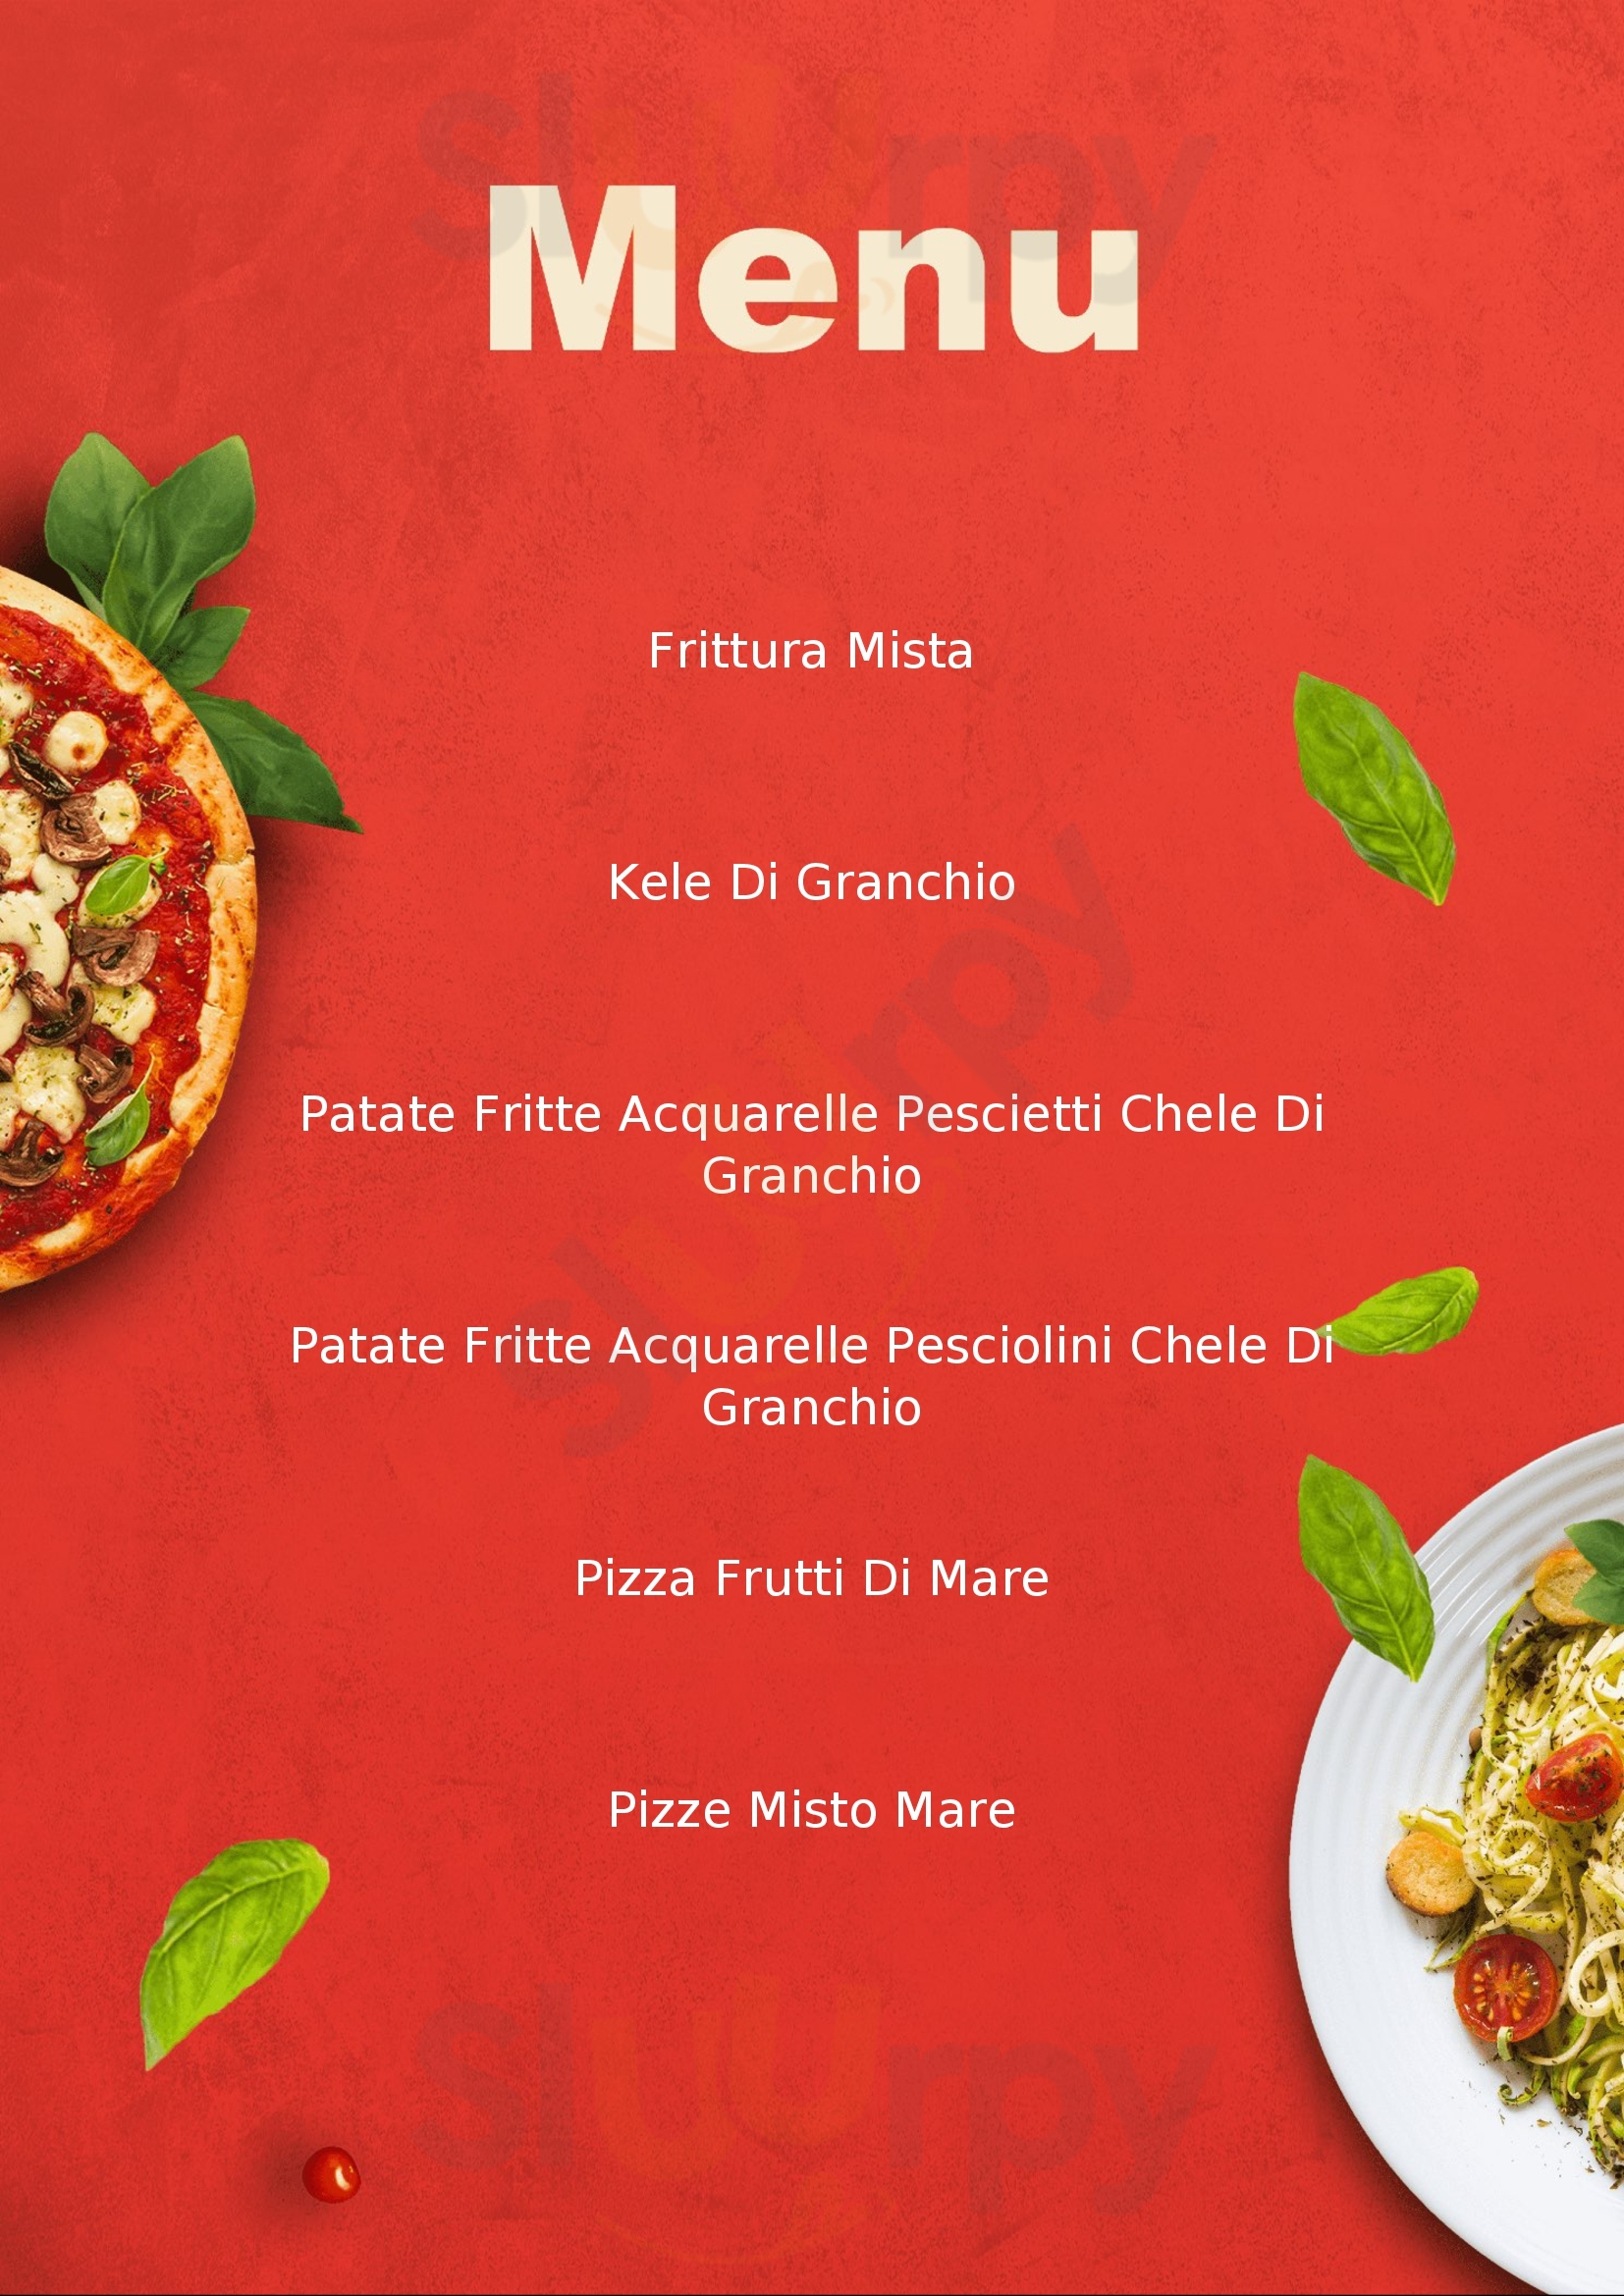 Pizzeria Da Gianni Formigine menù 1 pagina